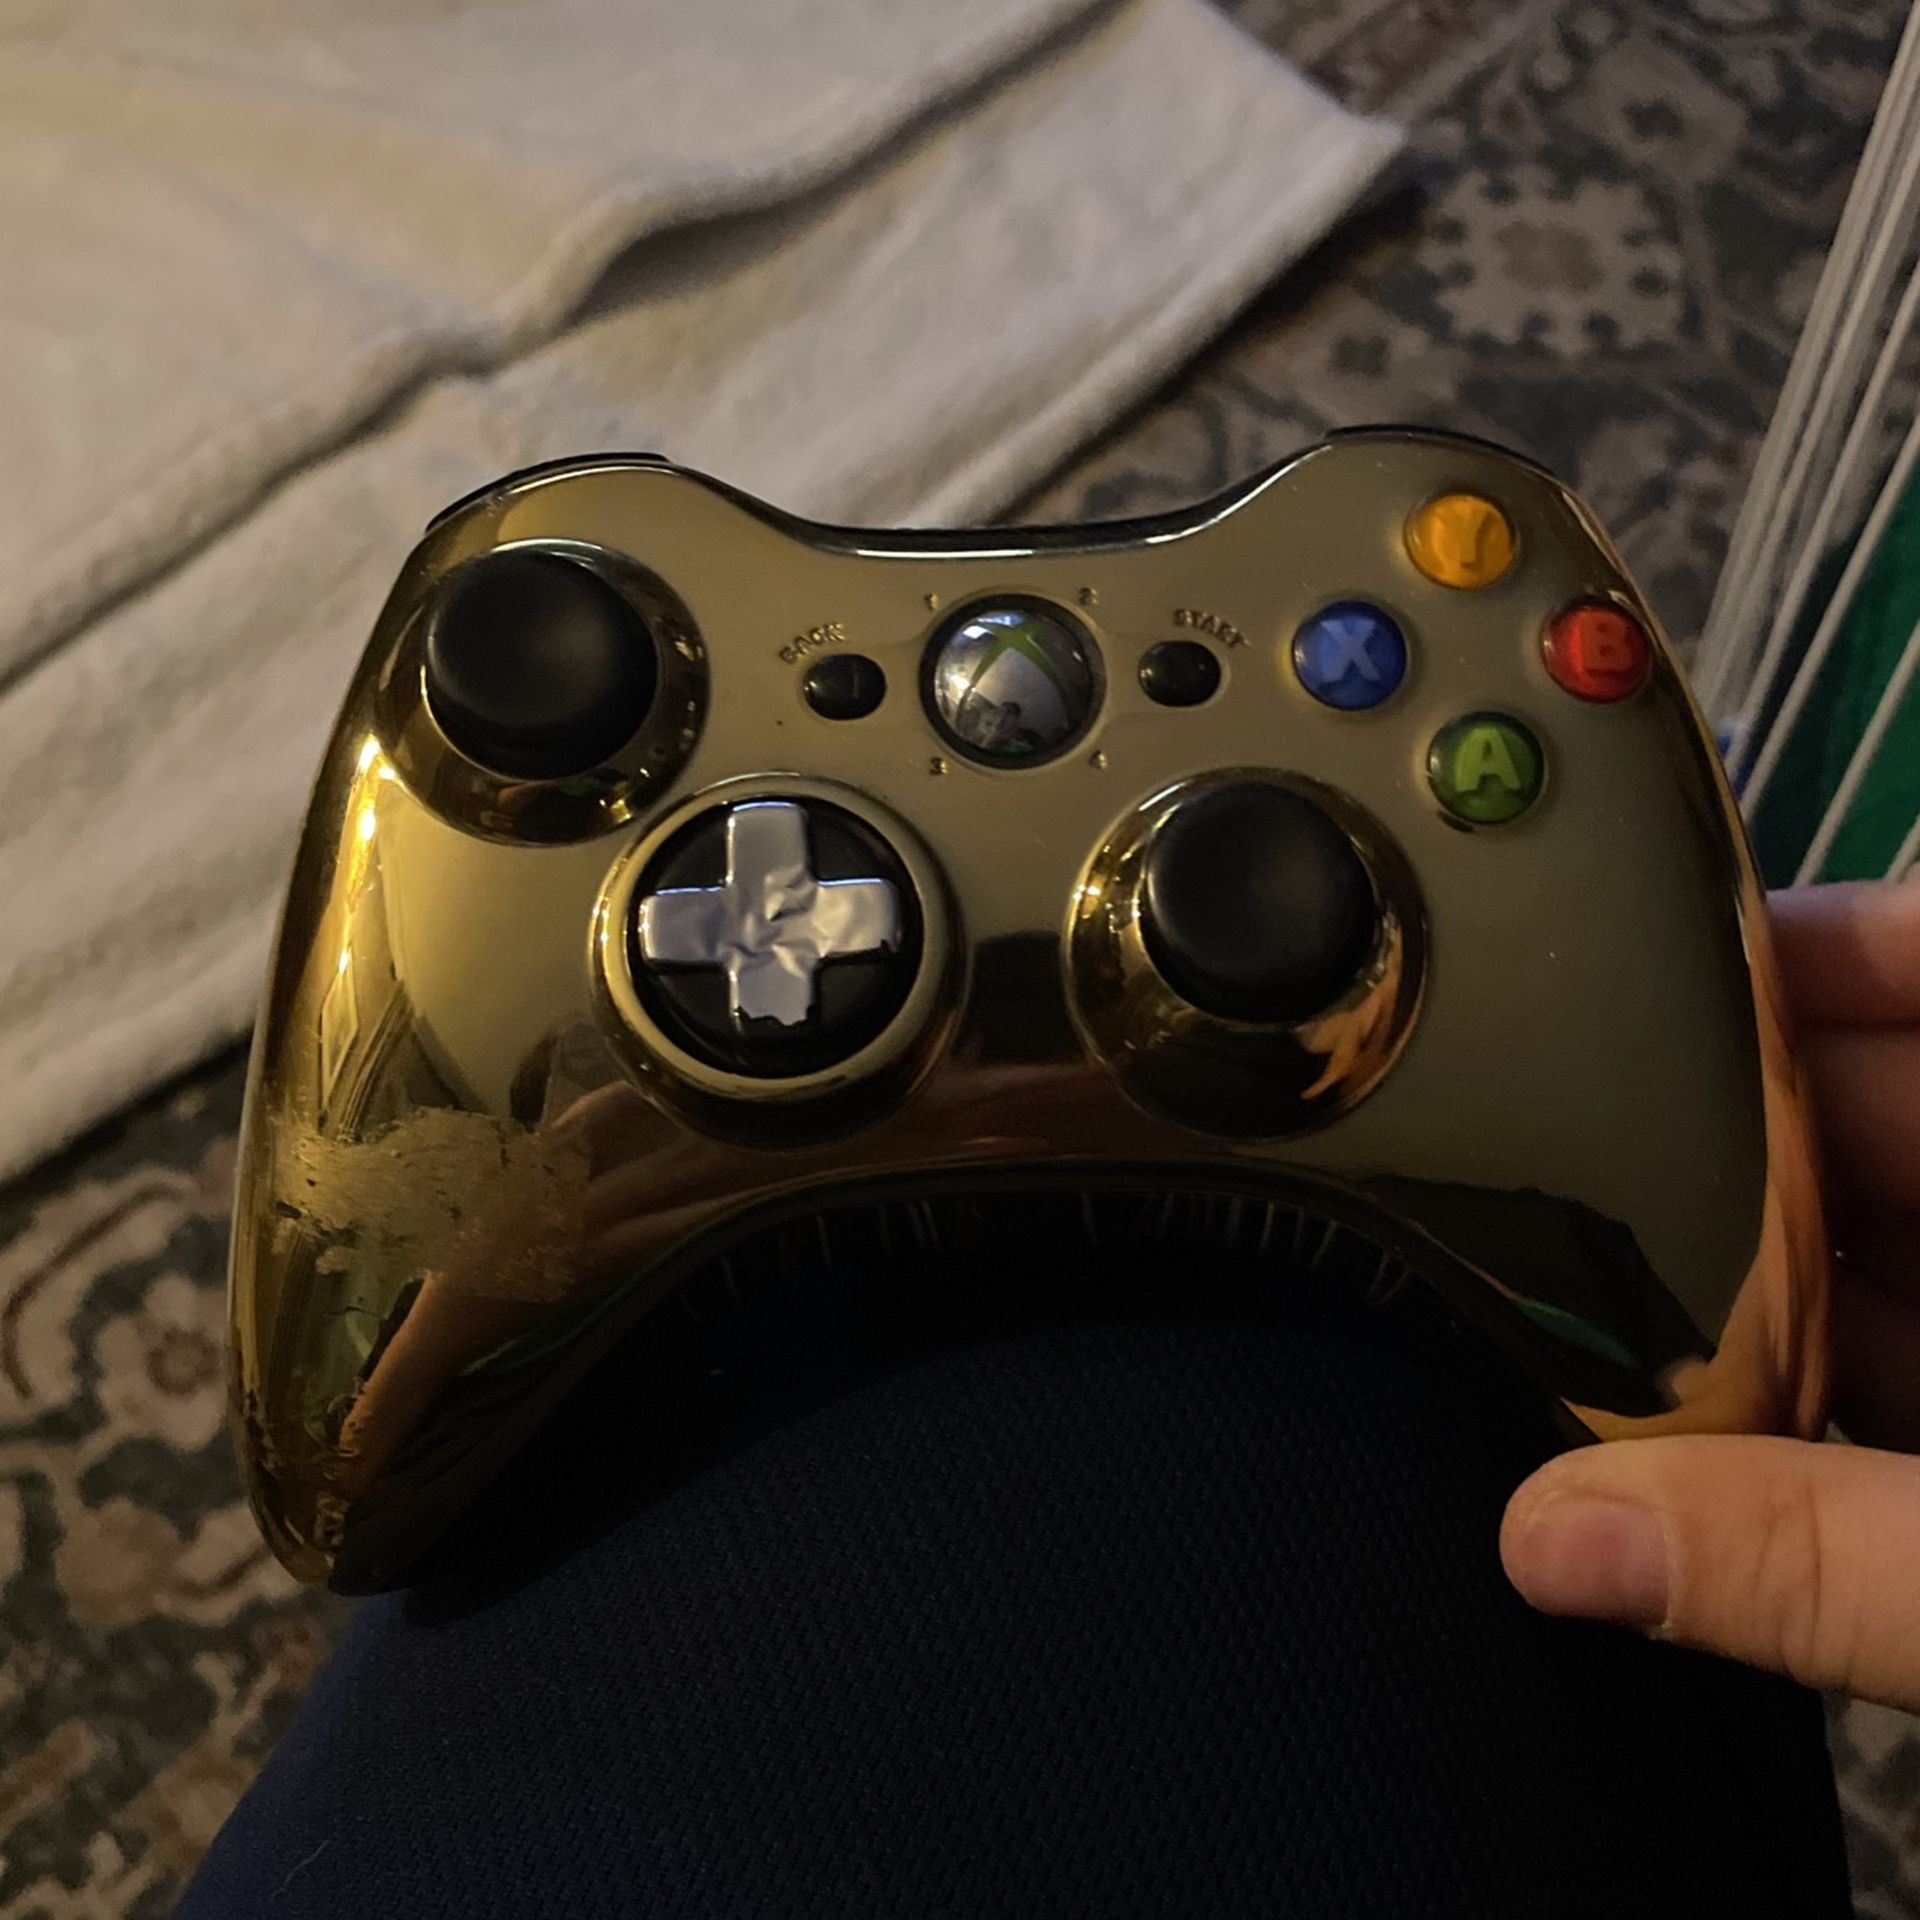 Gold Xbox 360 Controller